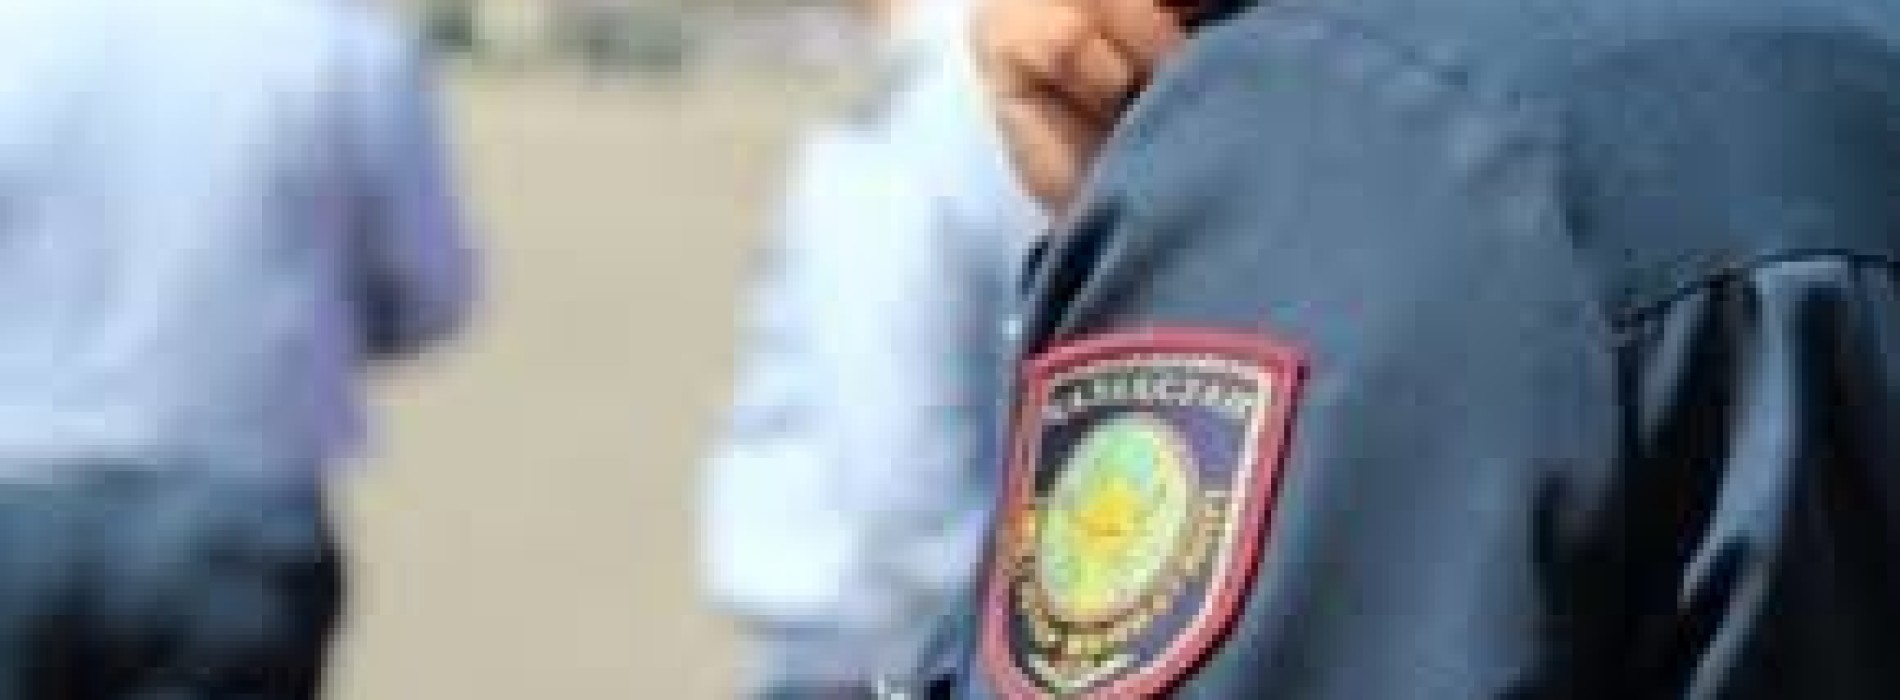 Двое полицейских Алматы вымогали деньги   